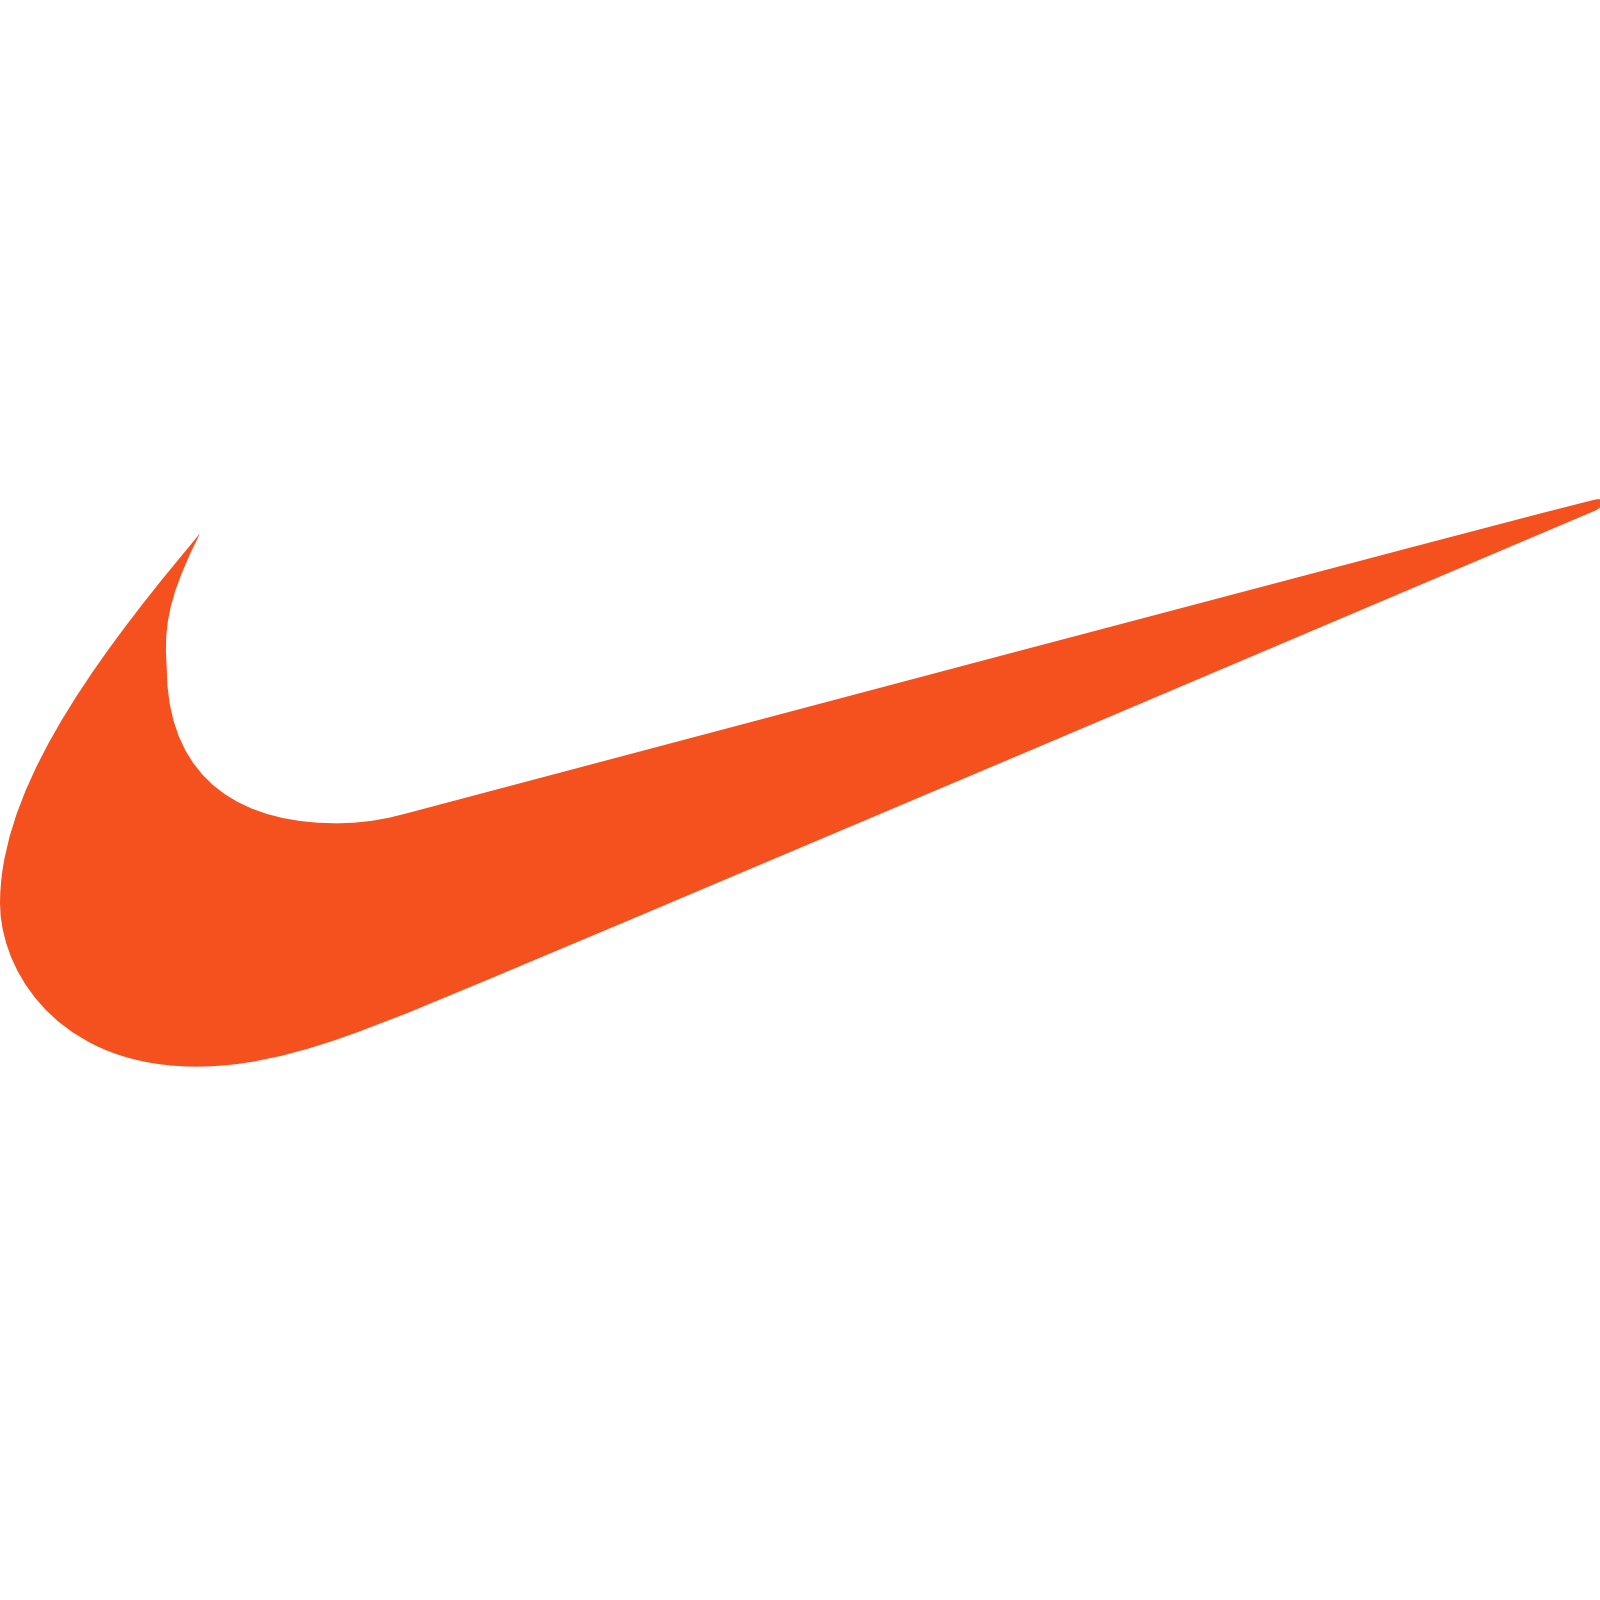 Nike Icon - Free Download at Icons8 - Nike Logo Icon